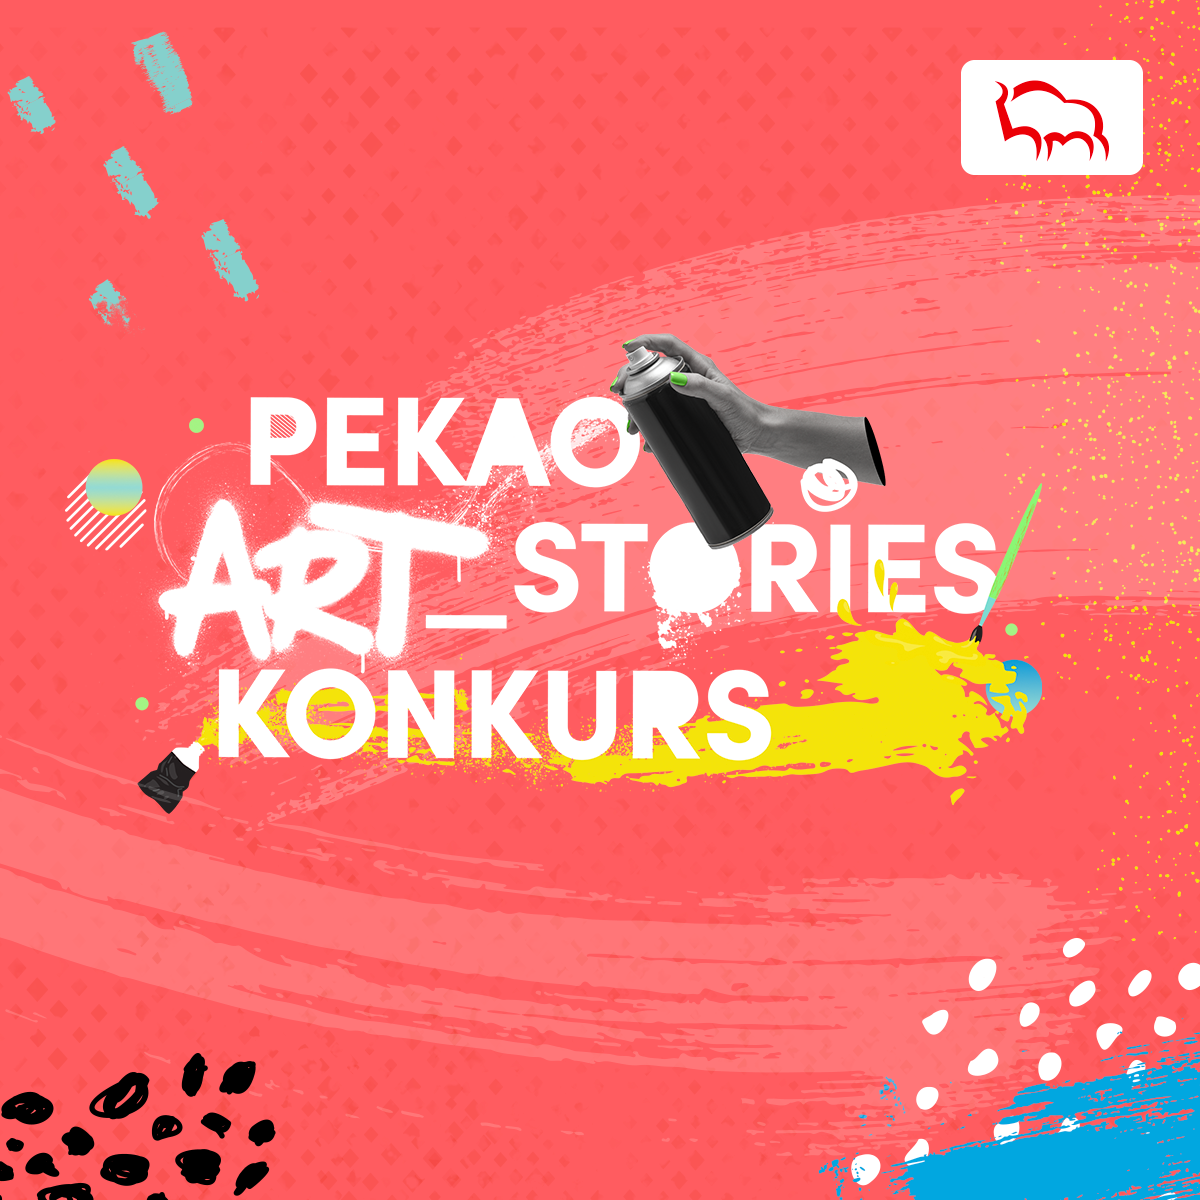 Konkurs dla młodych artystów Pekao ART_stories. Pekao ART_stories zorganizowany przez Bank Pekao S.A. to konkurs dla młodych artystów, w którym można wygrać do 20 tys. zł nagrody pieniężnej.